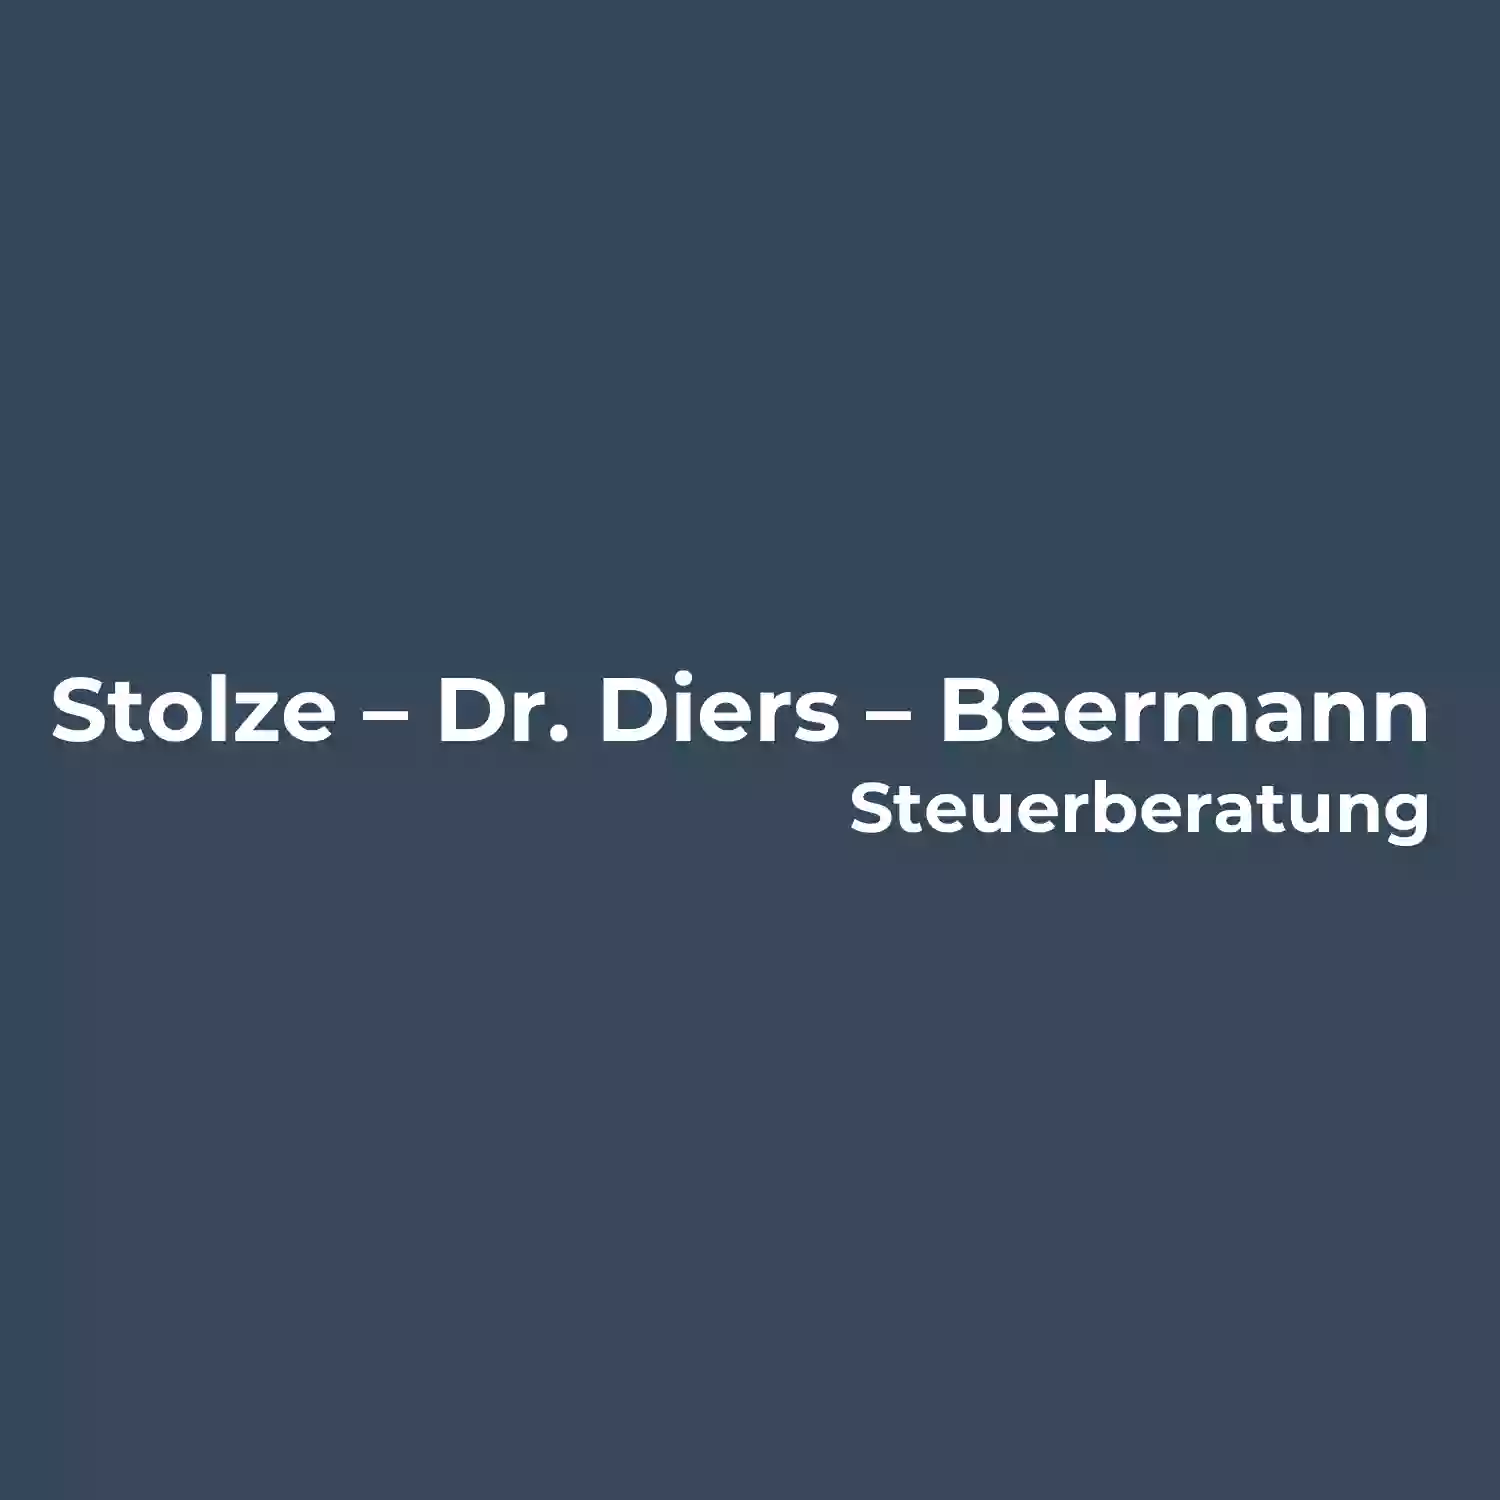 Stolze - Dr. Diers - Beermann Bremen GmbH Steuerberatungsgesellschaft